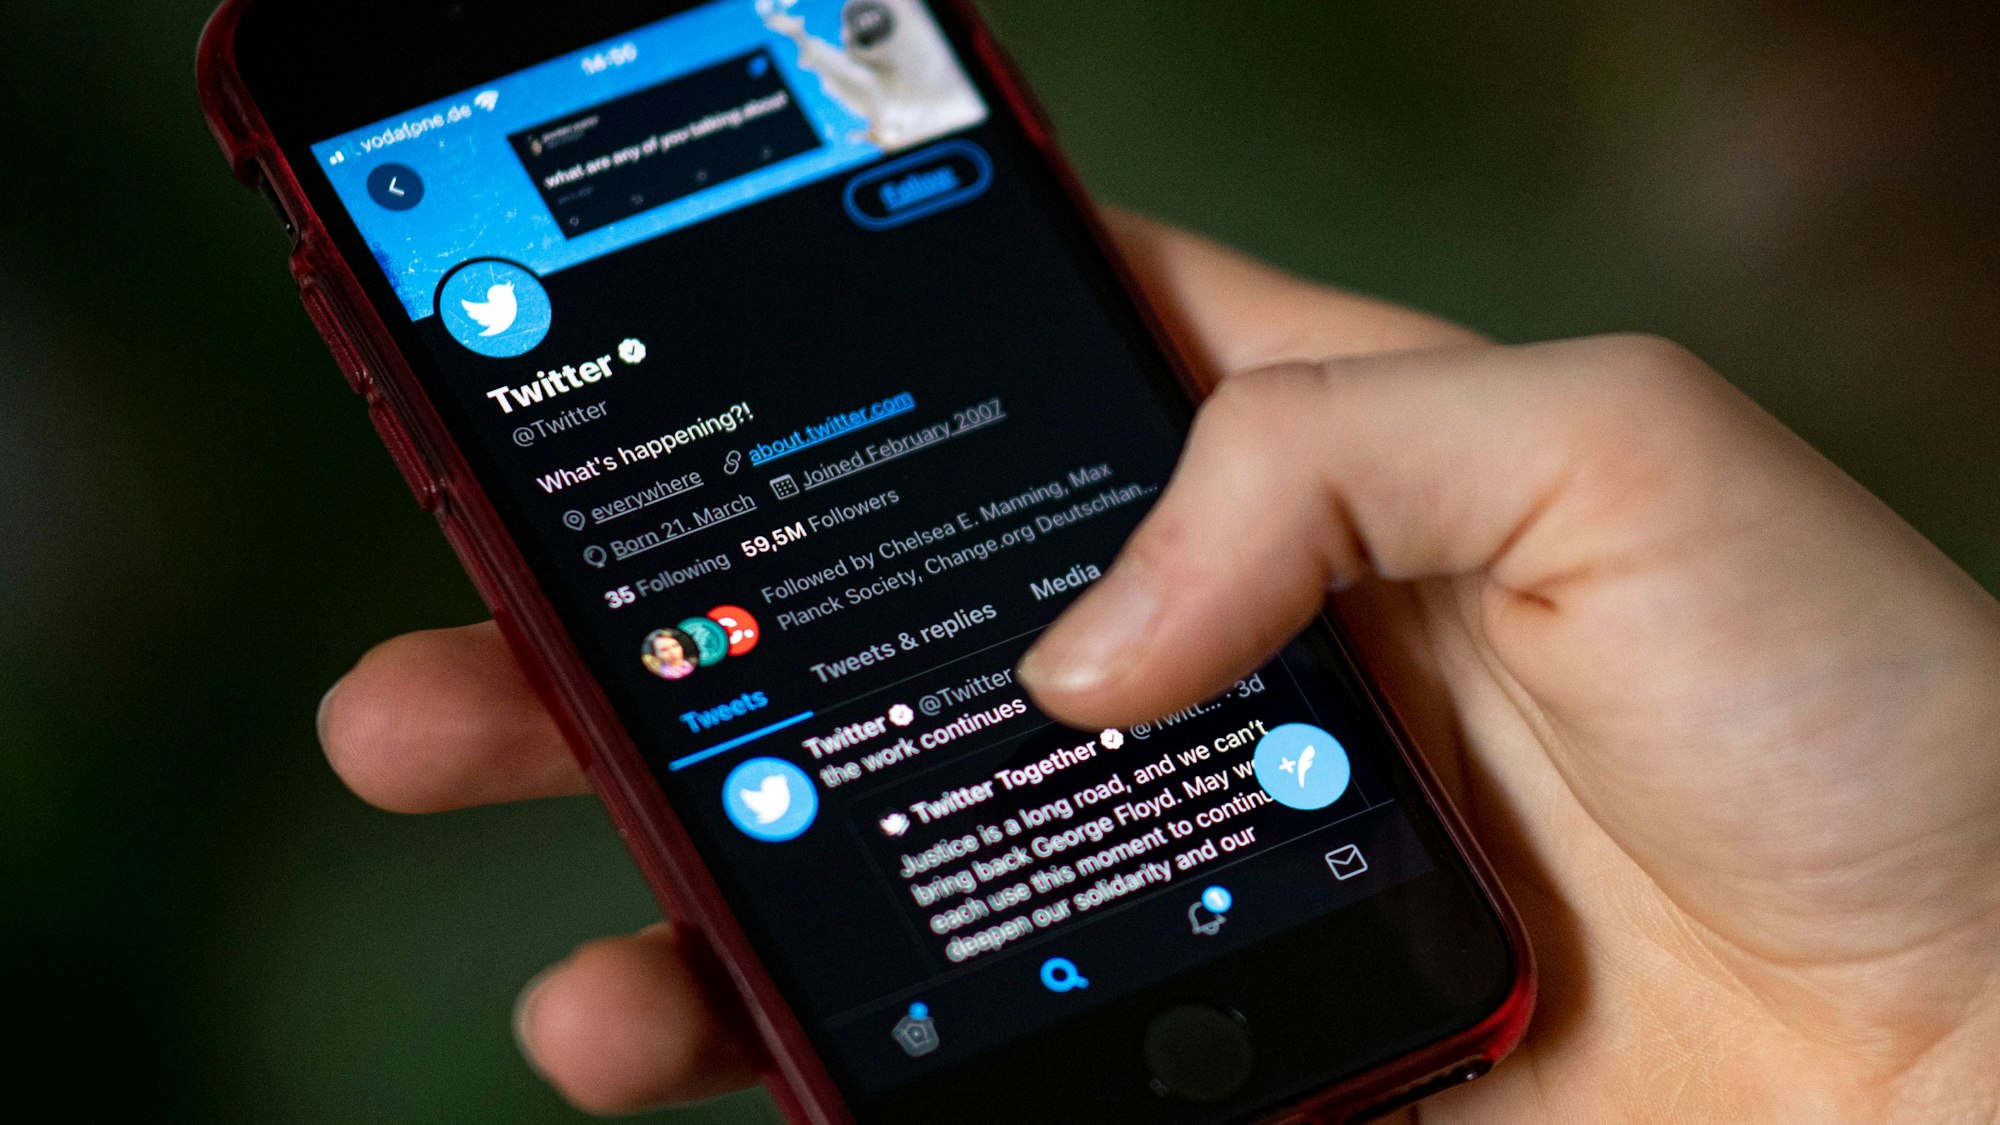 Auf dem Bildschirm eines Smartphones sieht man die Timeline in der App Twitter.